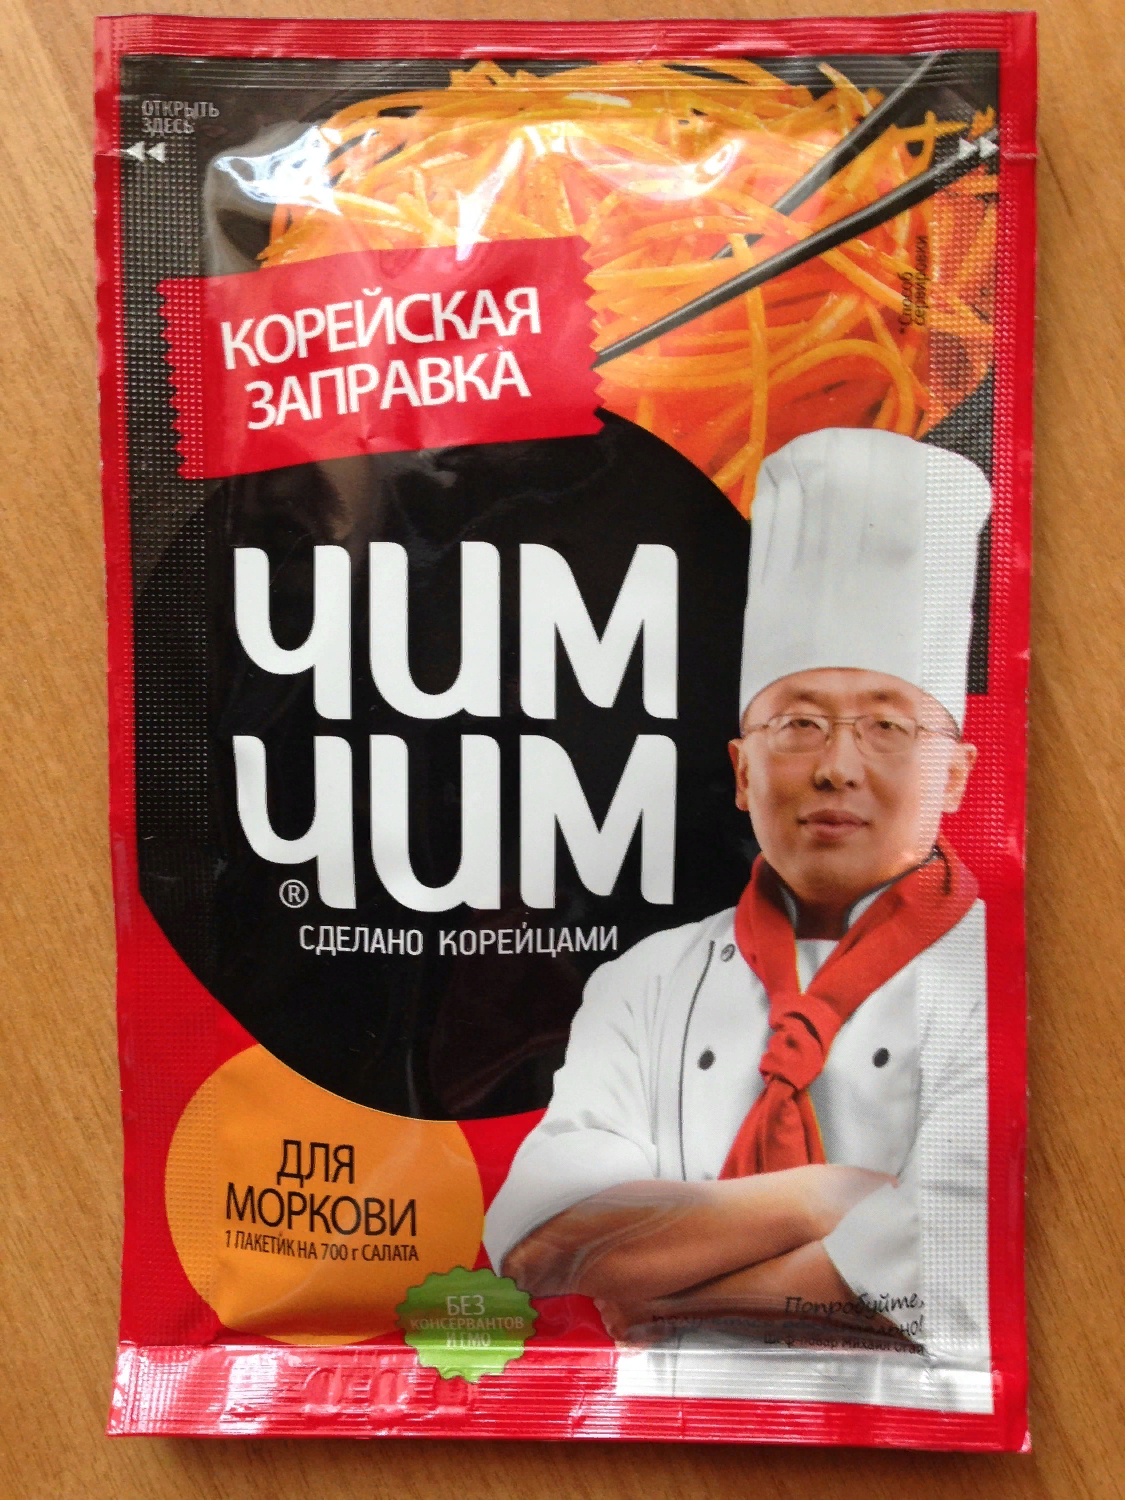 Корейская заправка ЧИМ-ЧИМ (Virtex Food) для моркови фото